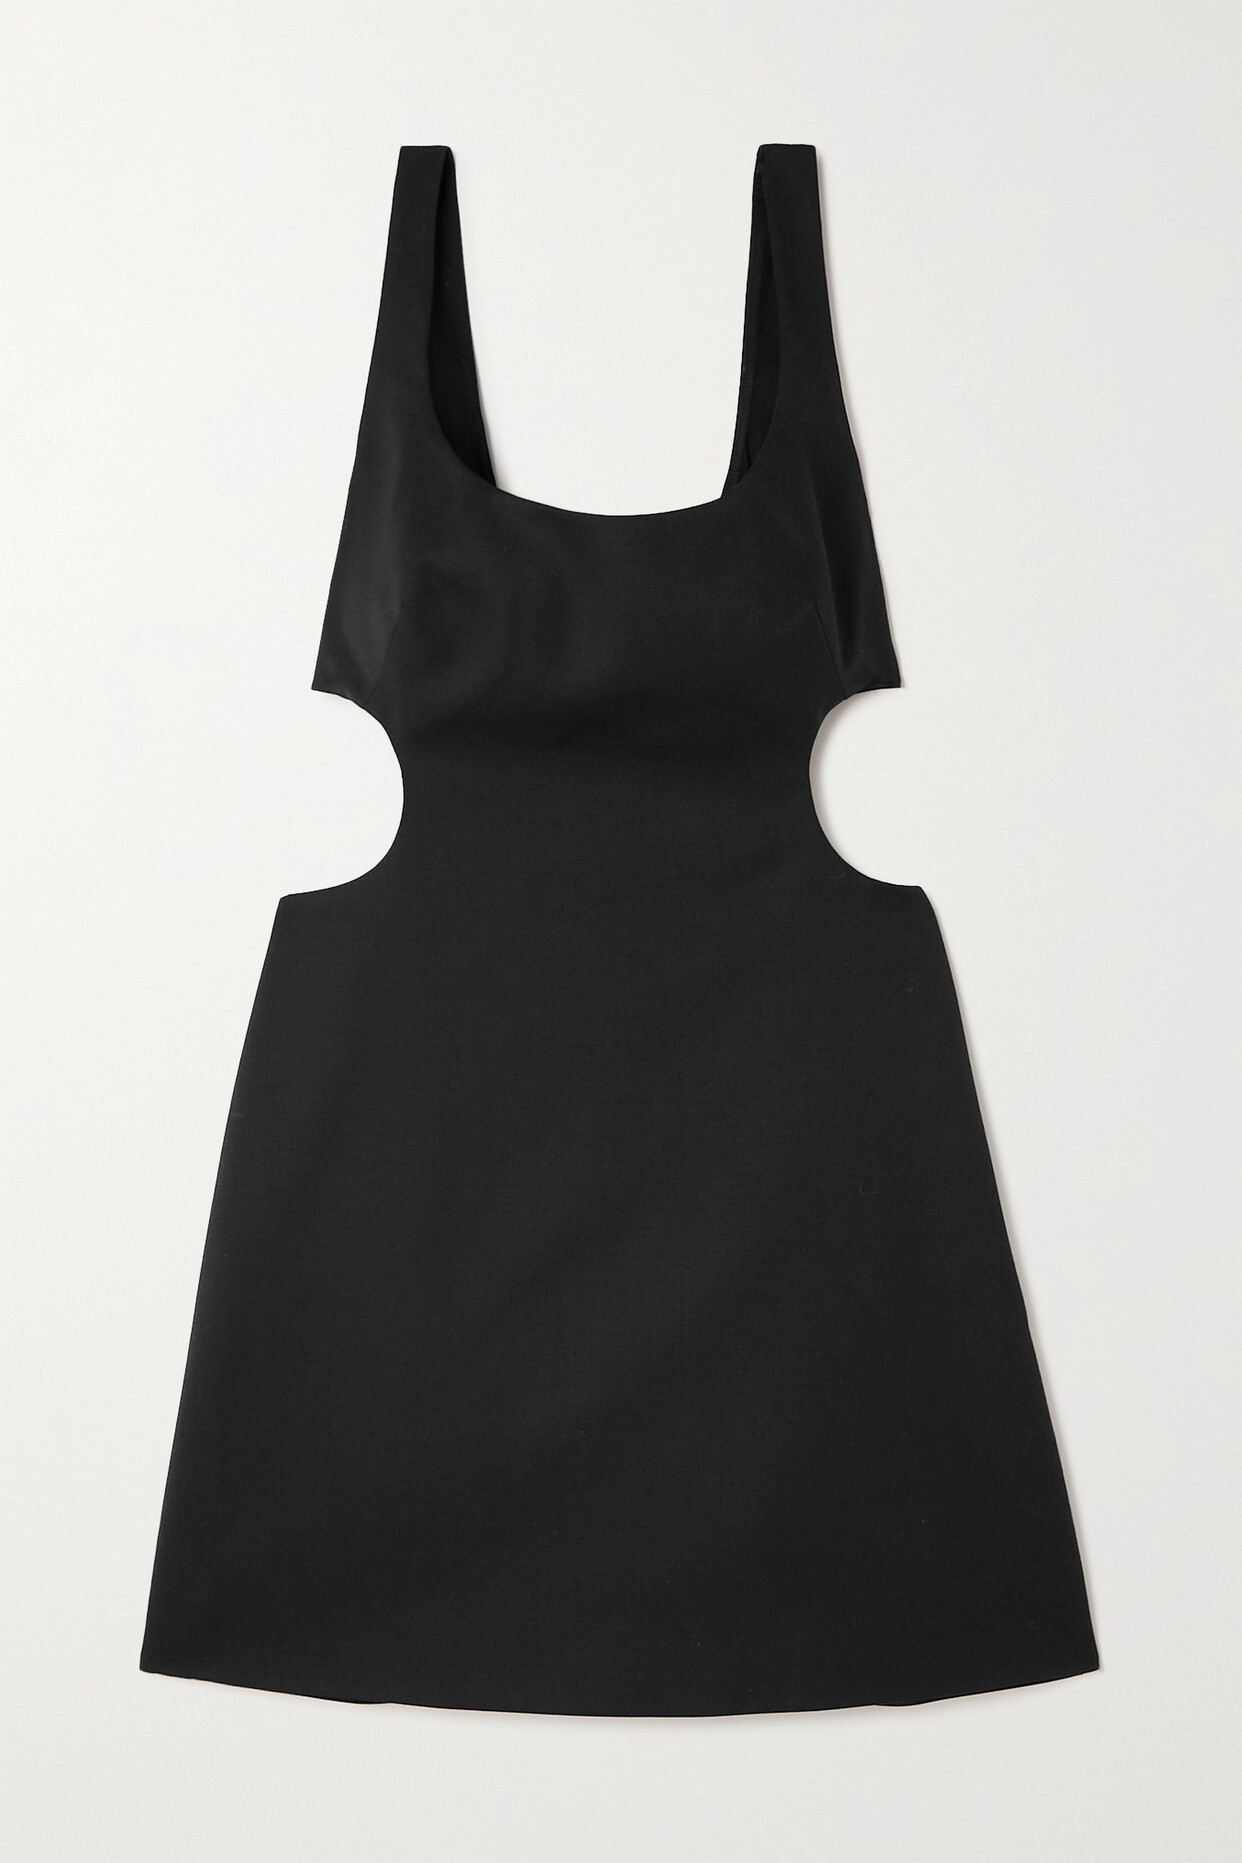 Valentino - Cutout Wool-blend Mini Dress - Black